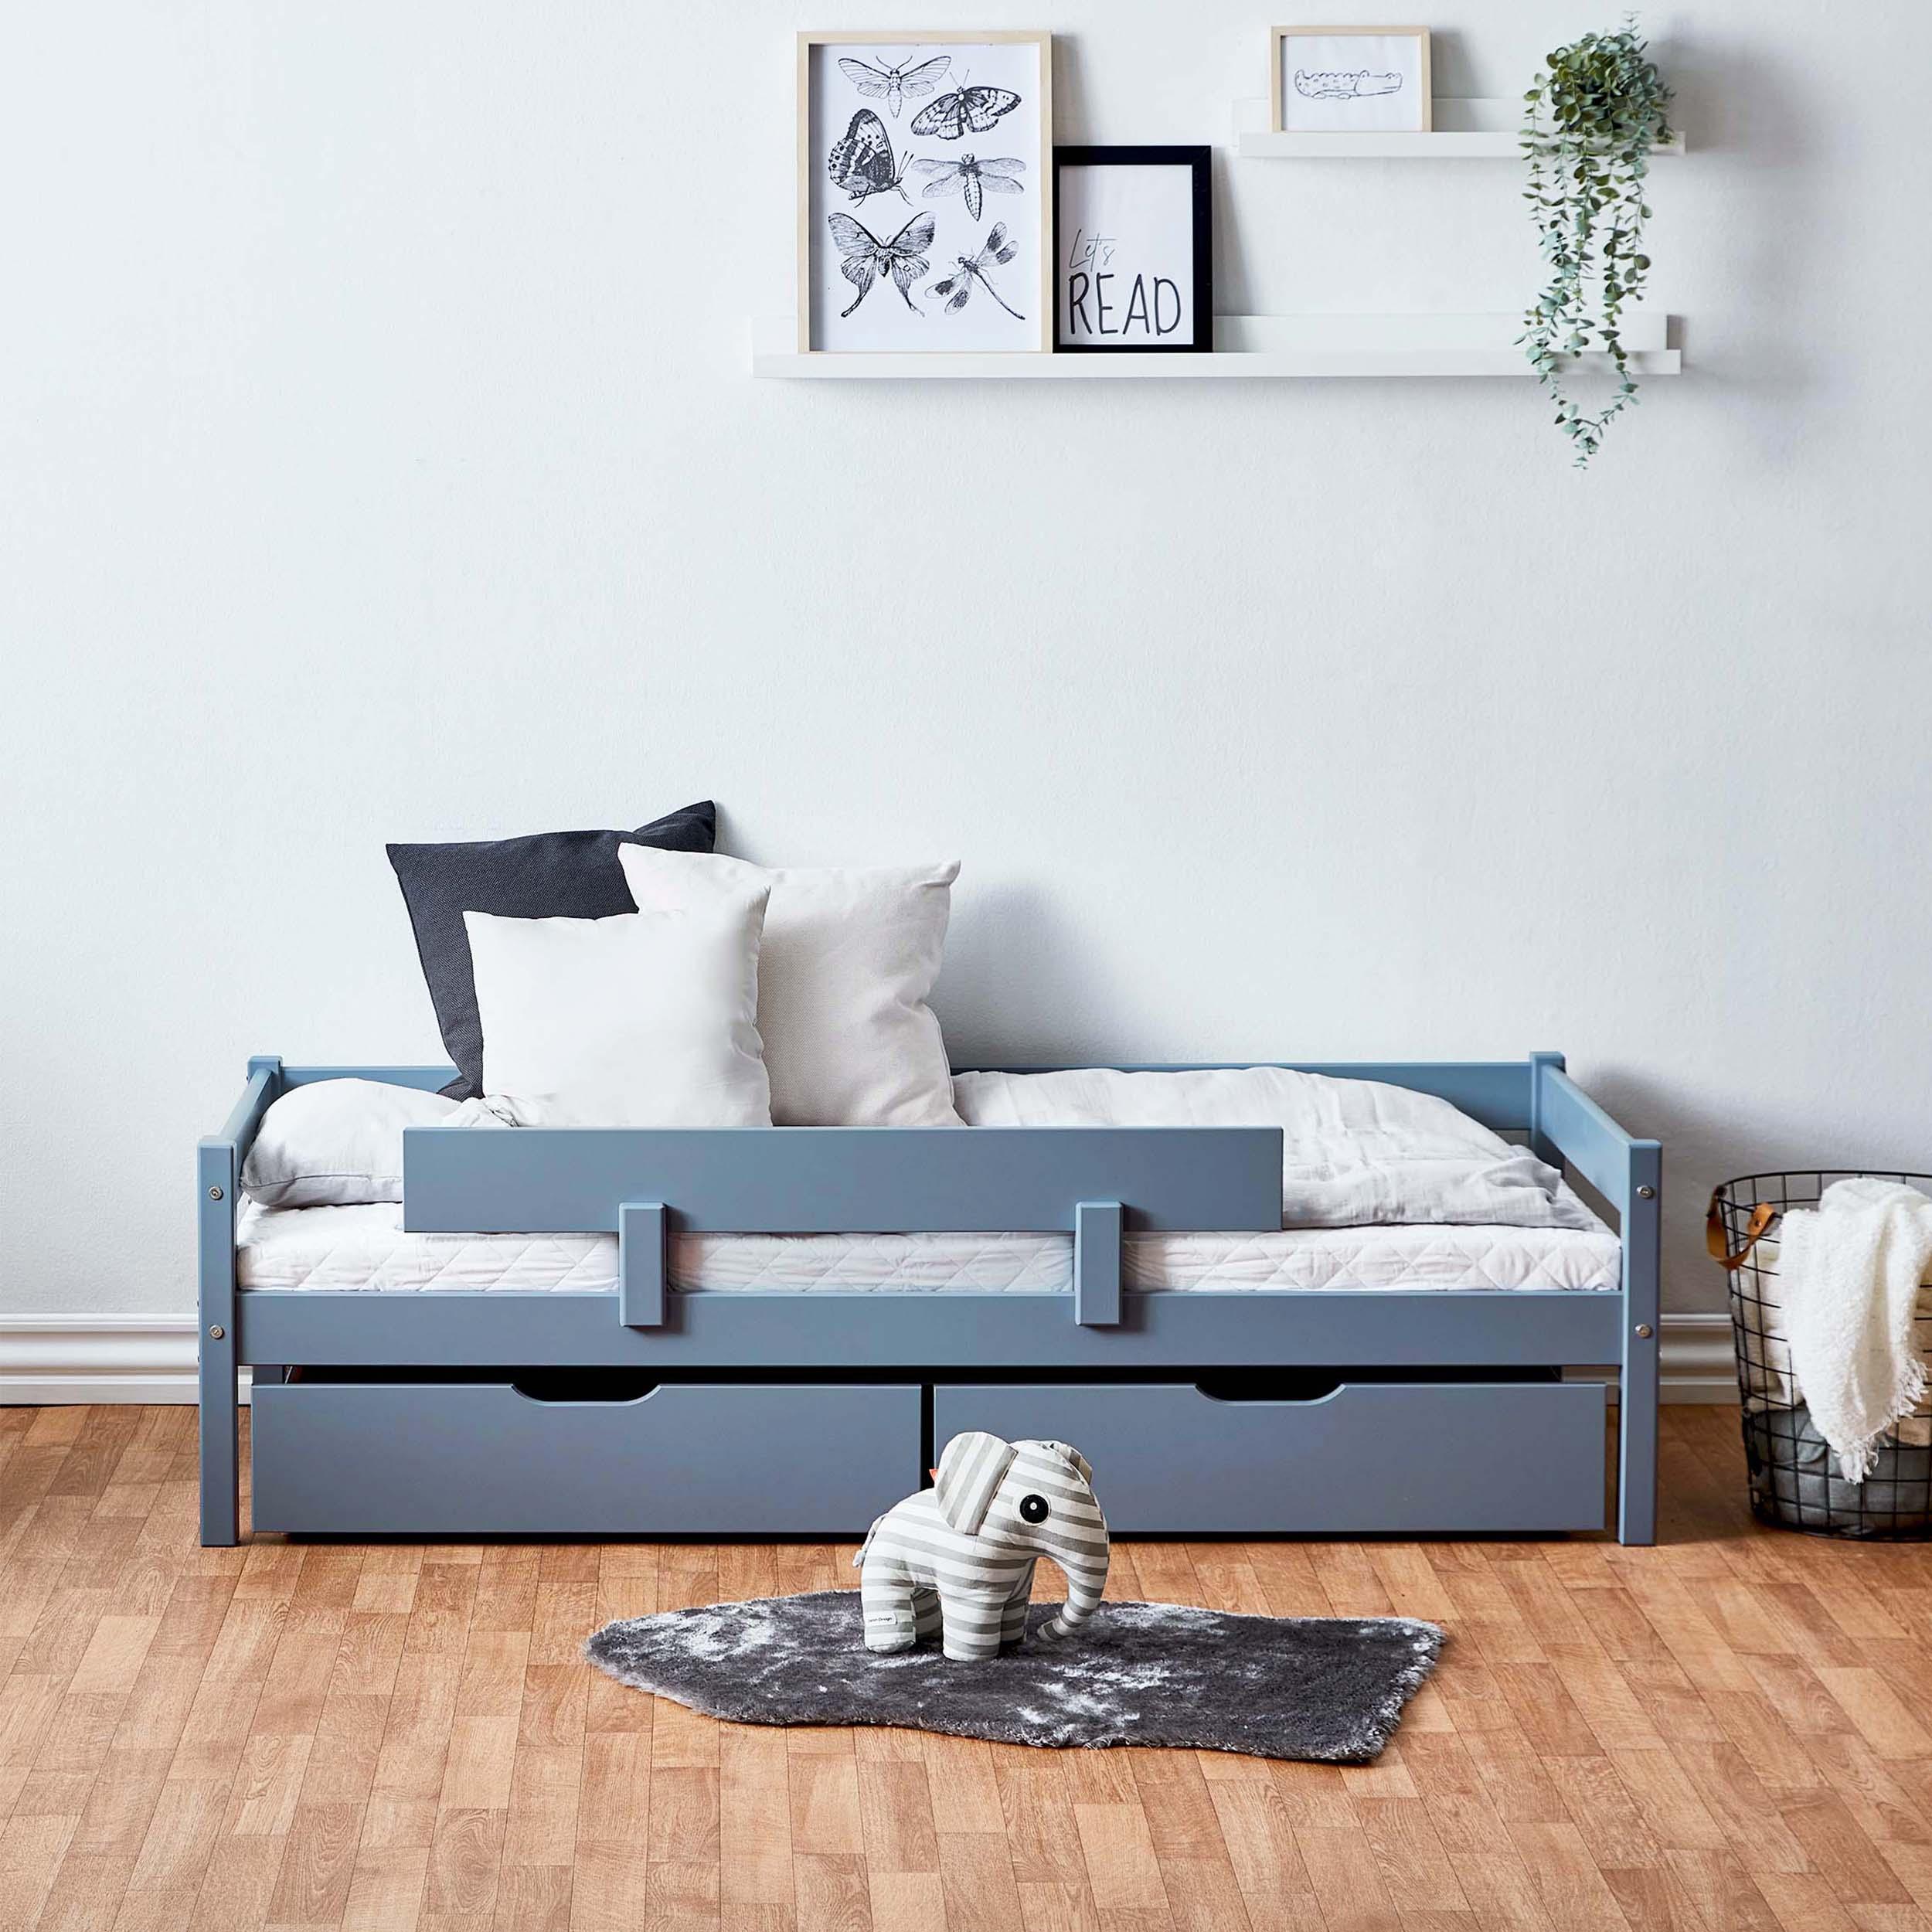 Bedpakket: Junior bed 70x160 cm met lades & bedrail, Dusted Blue